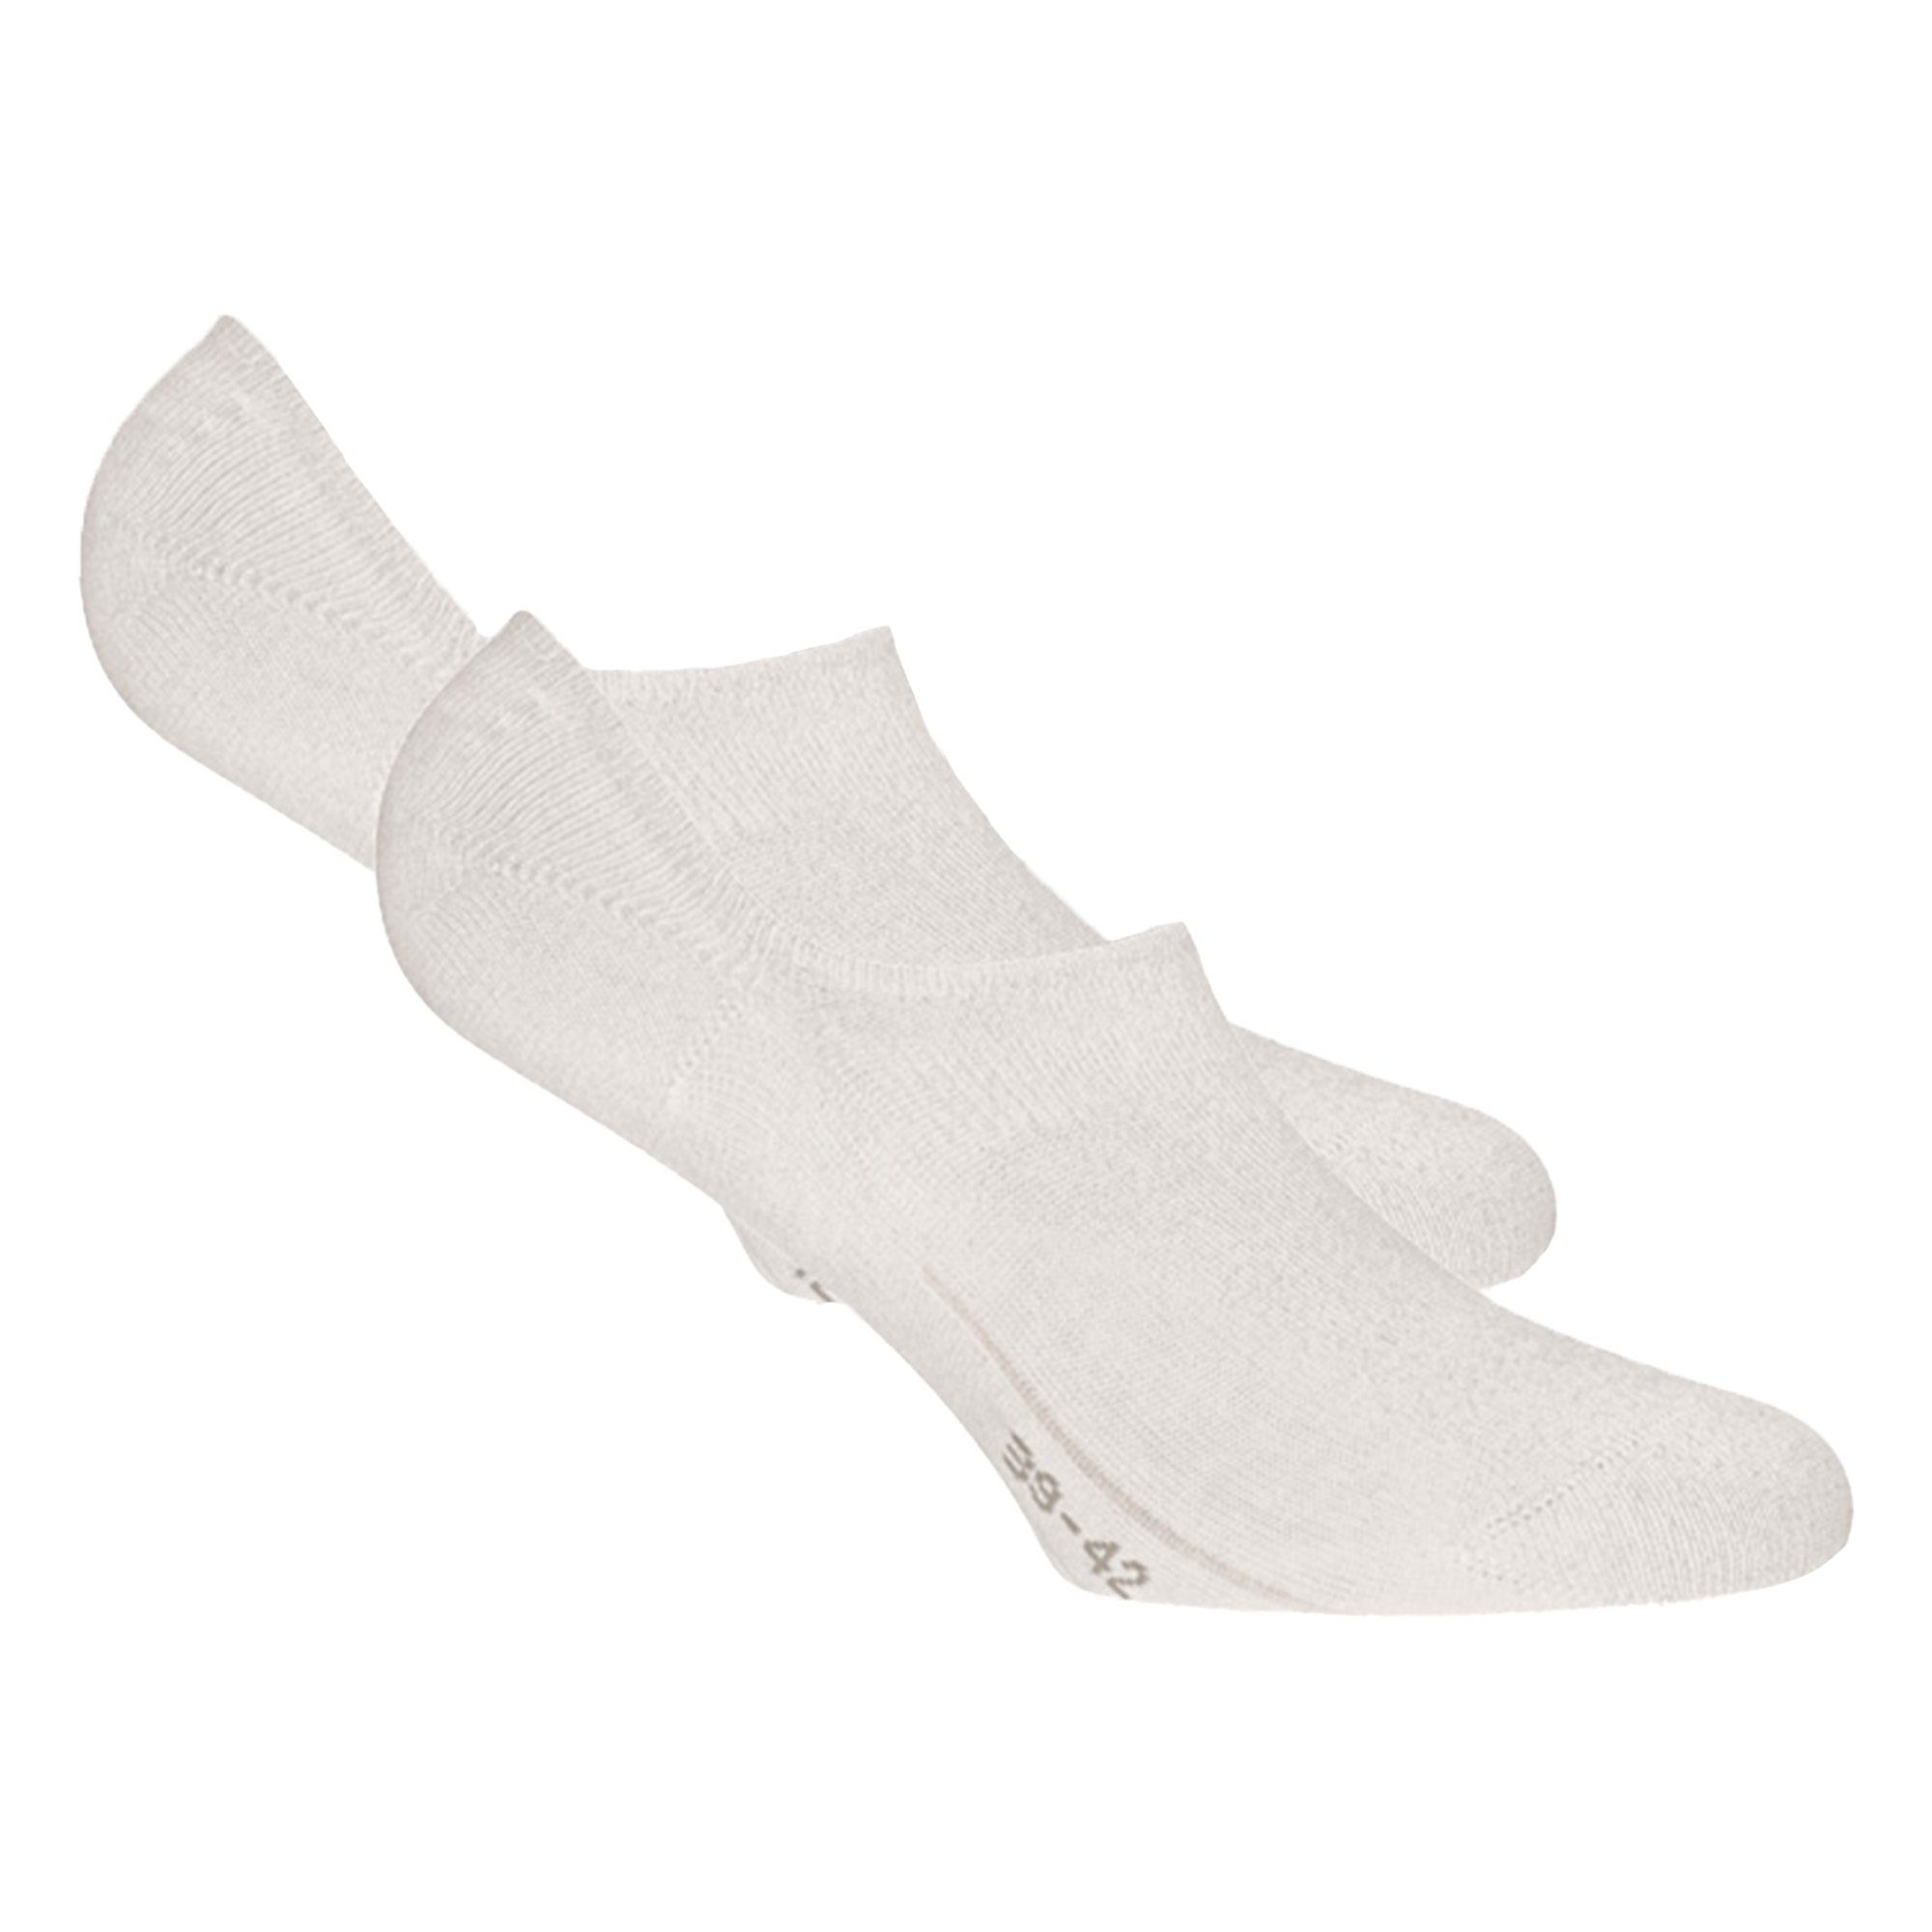 Rohner Socks Füßlinge Unisex Füßlinge, 2er Pack - Basic Footies Weiß